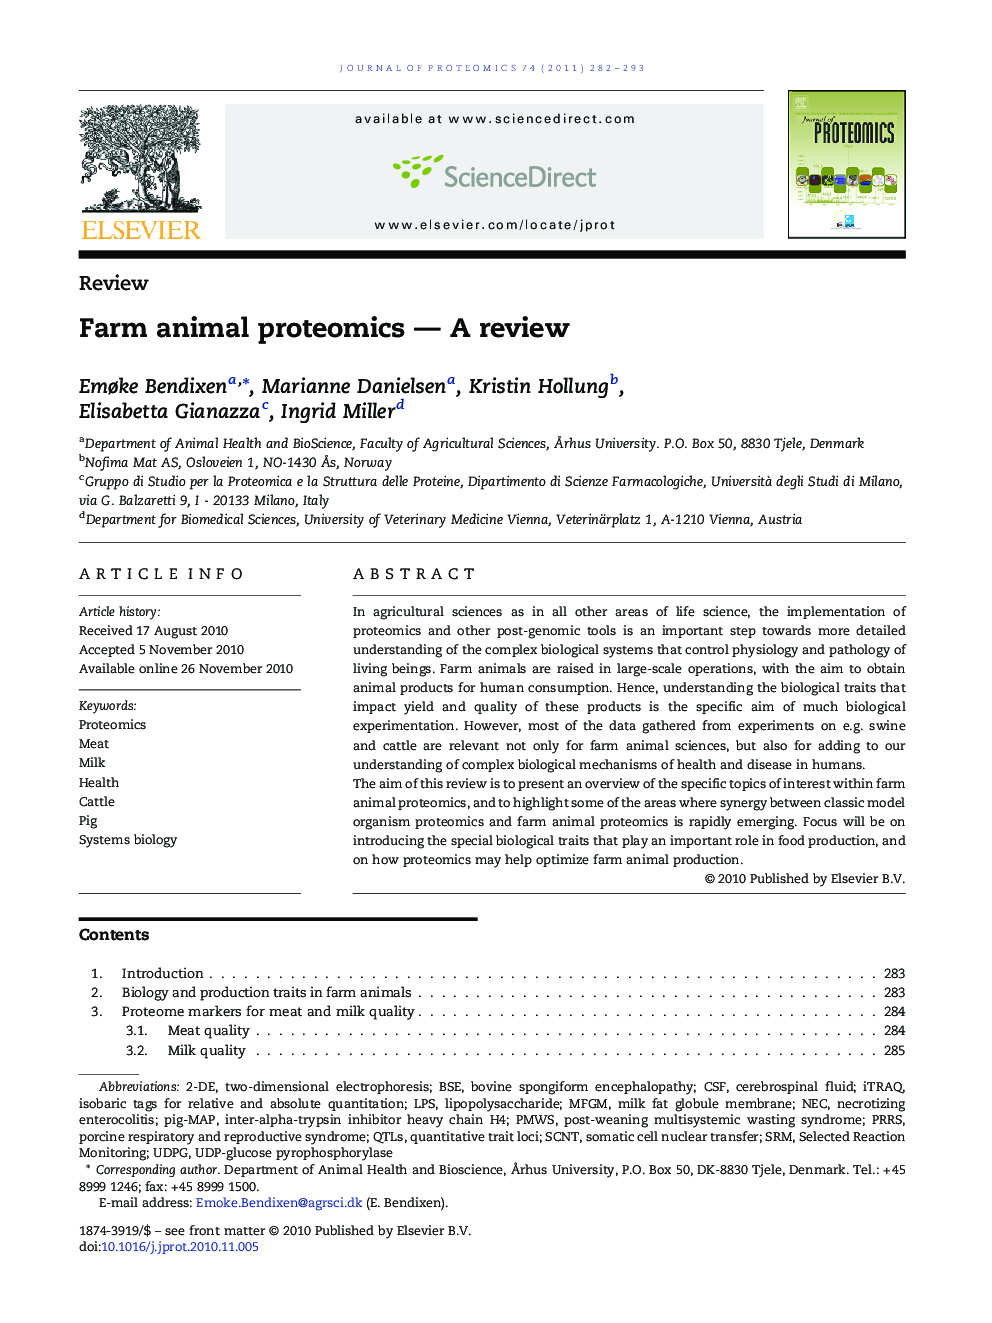 Farm animal proteomics — A review